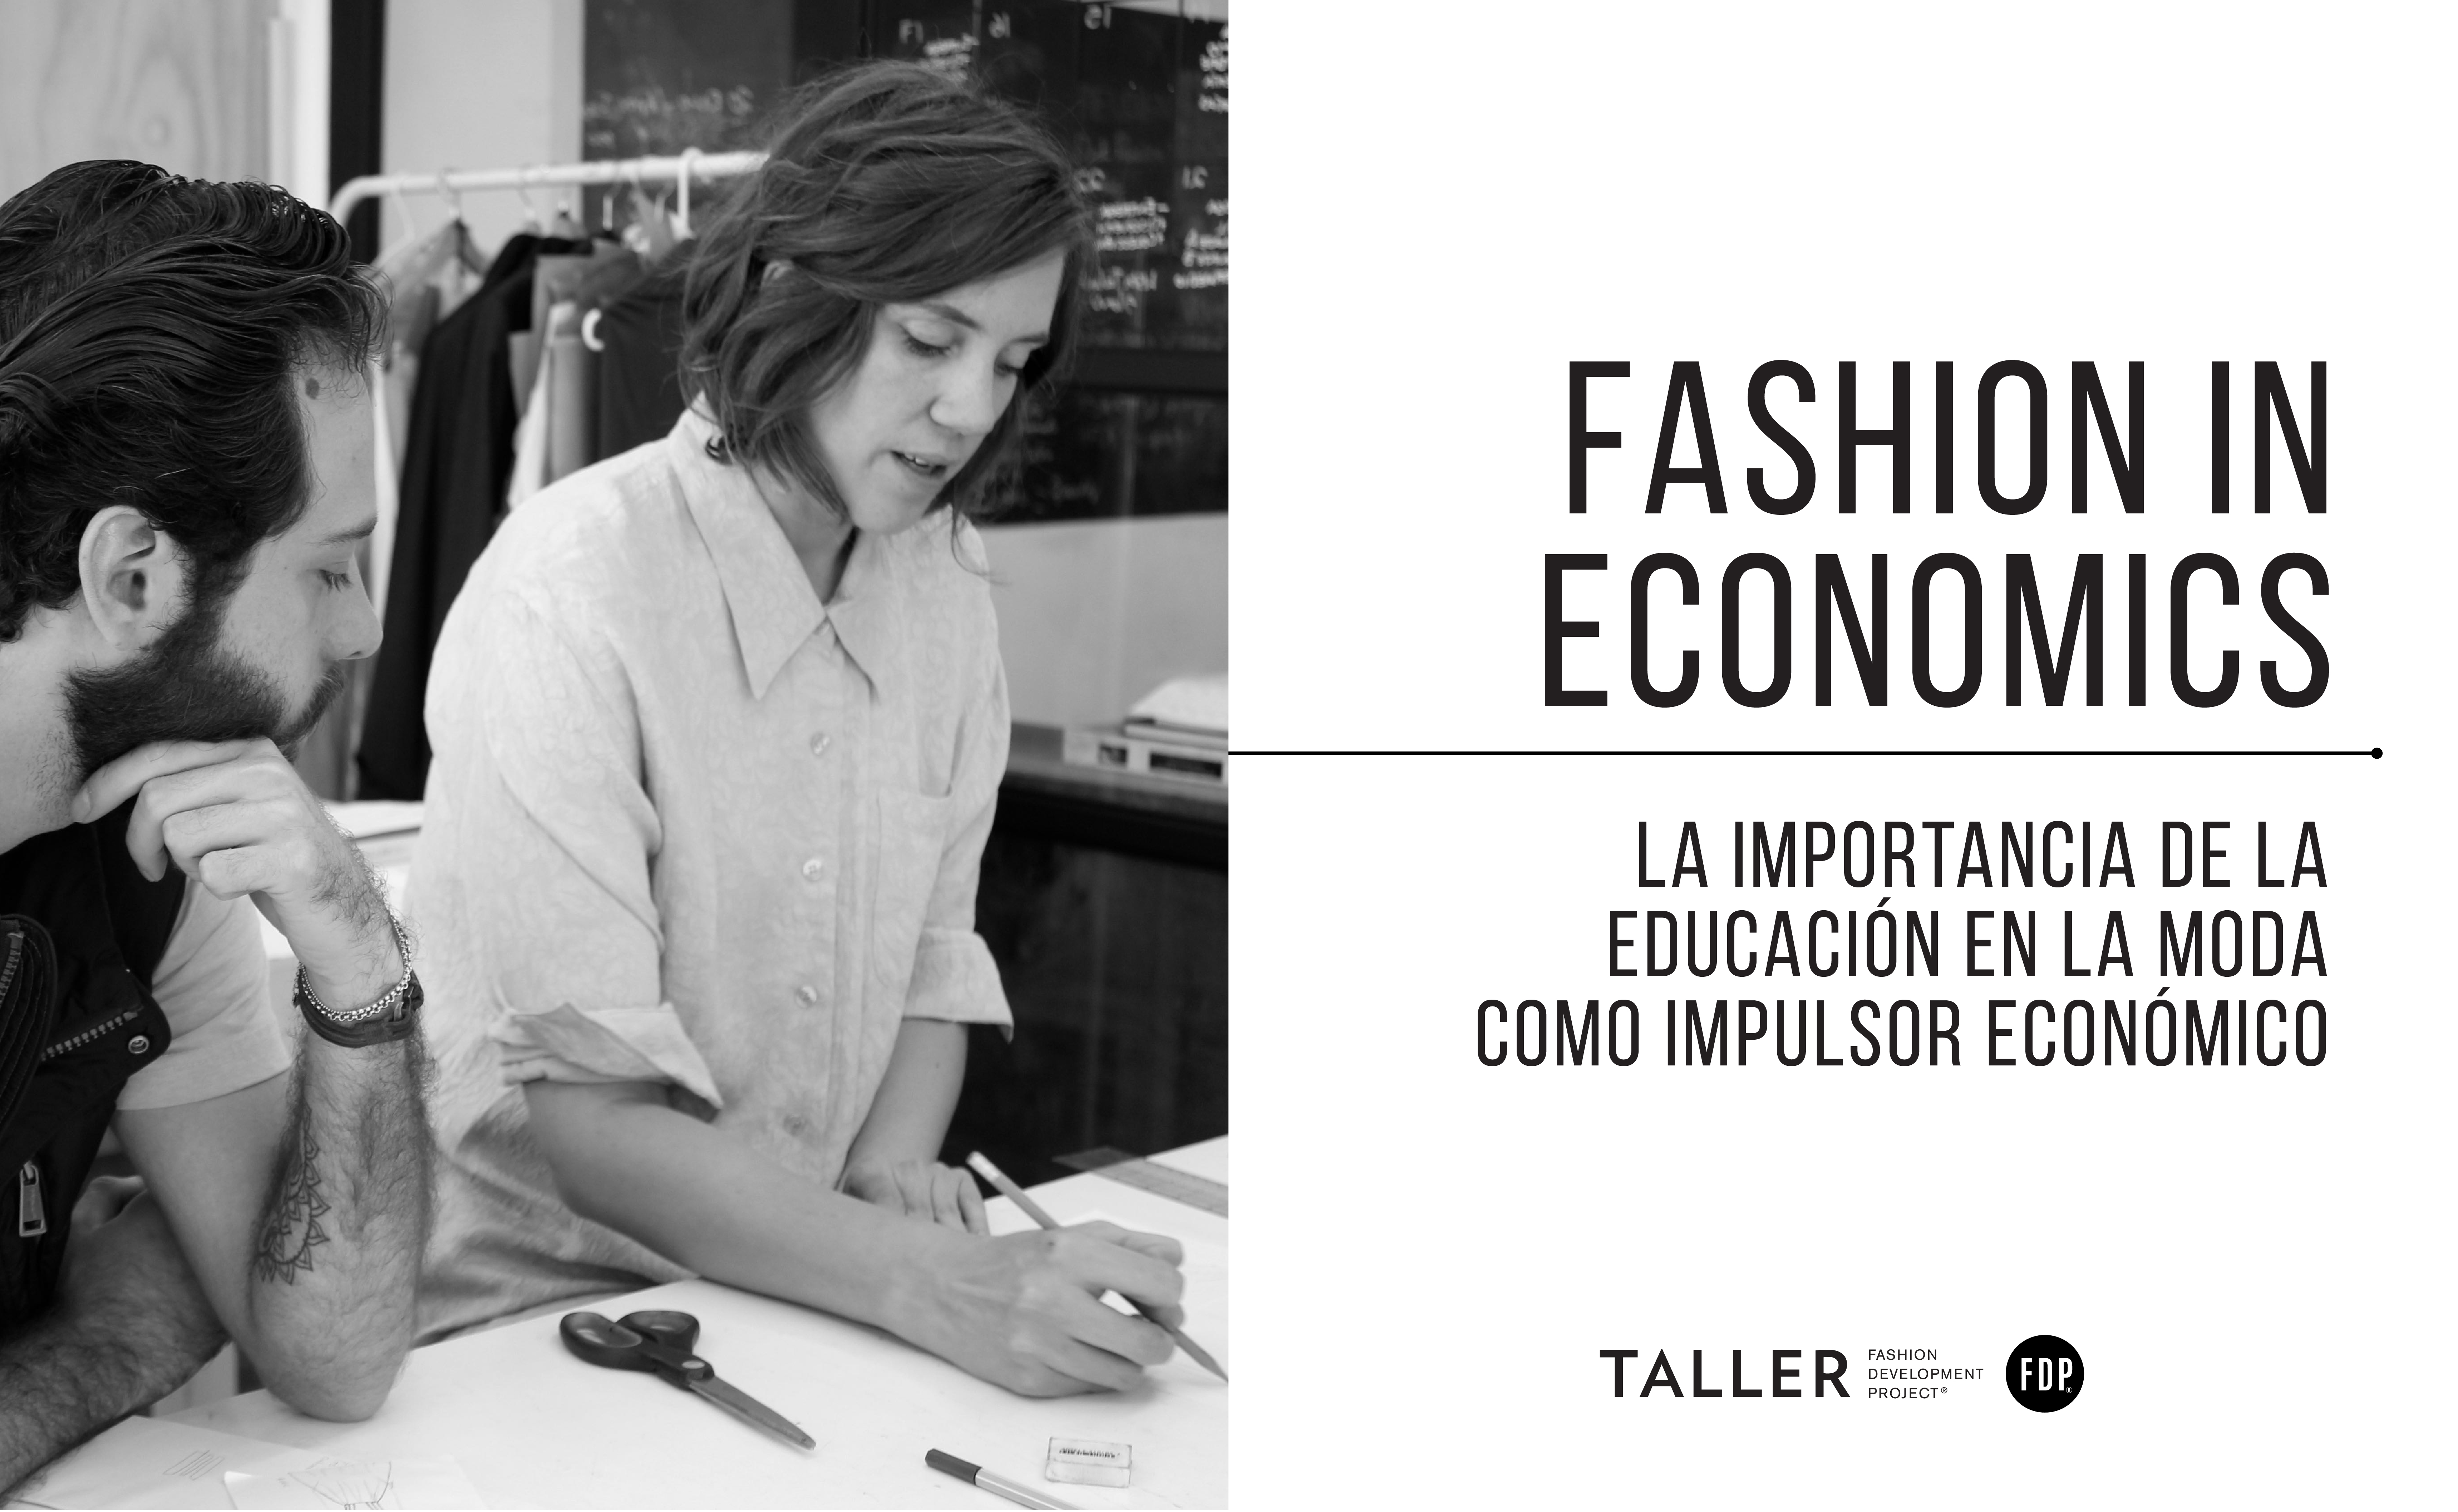 Fashion in Economics: La importancia de la educación en la moda como impulsor económico  